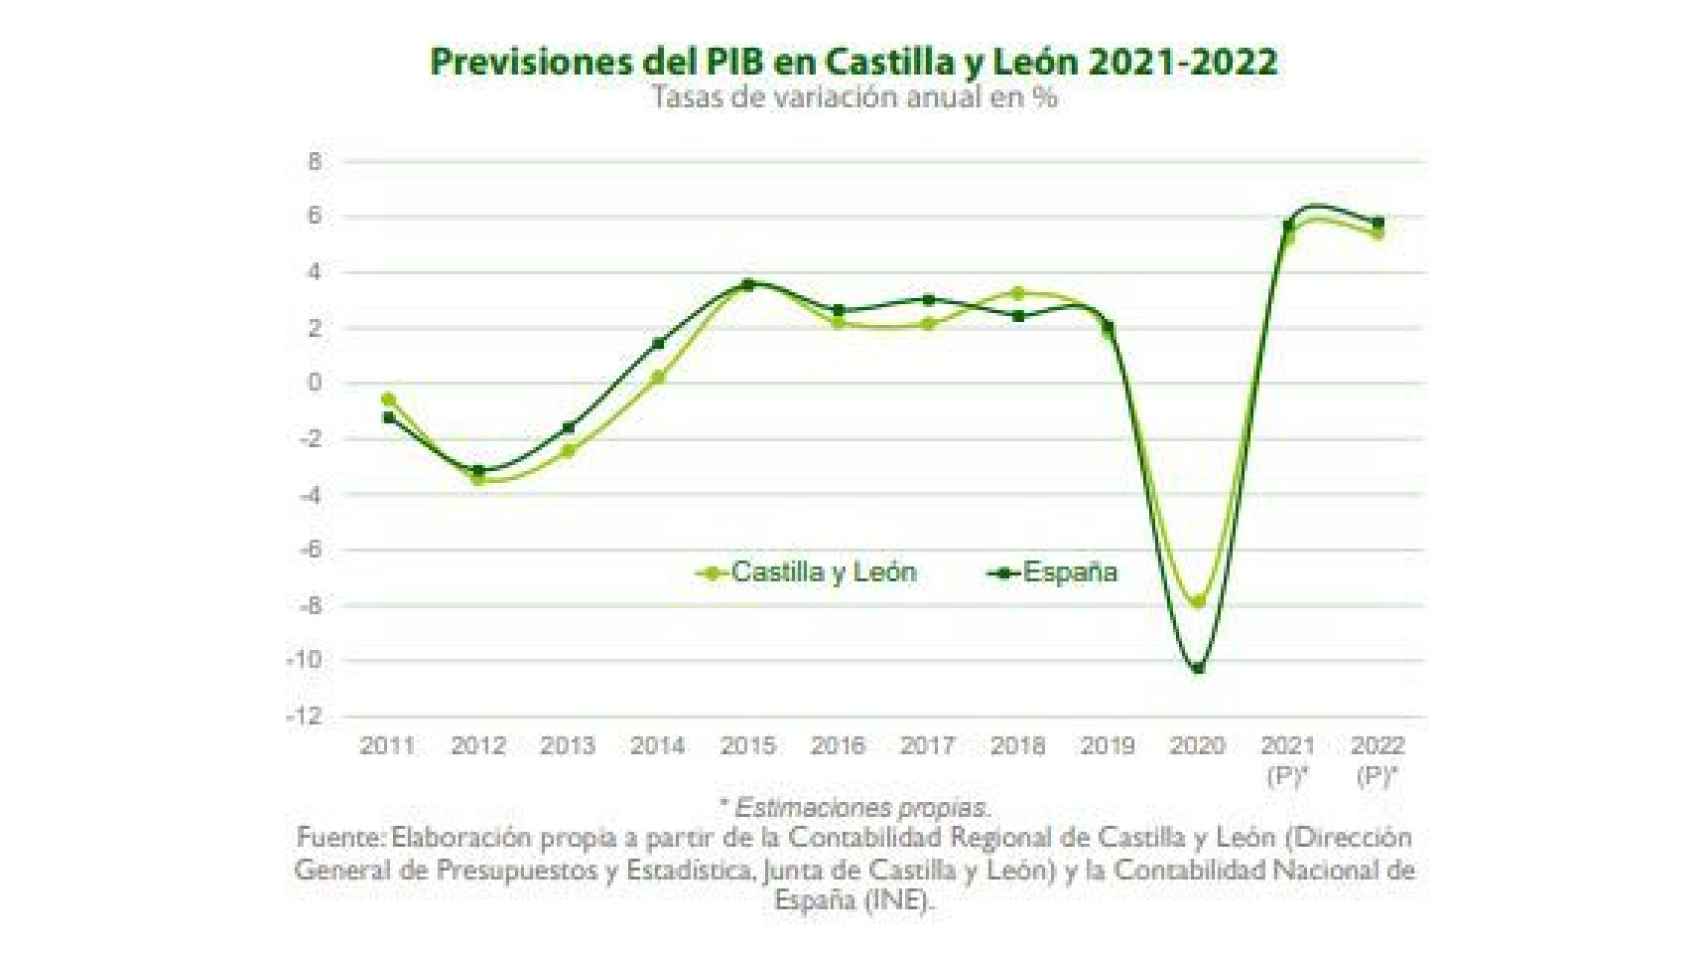 Previsiones del PIB para 2022 en Castilla y León según el informe de Unicaja Banco